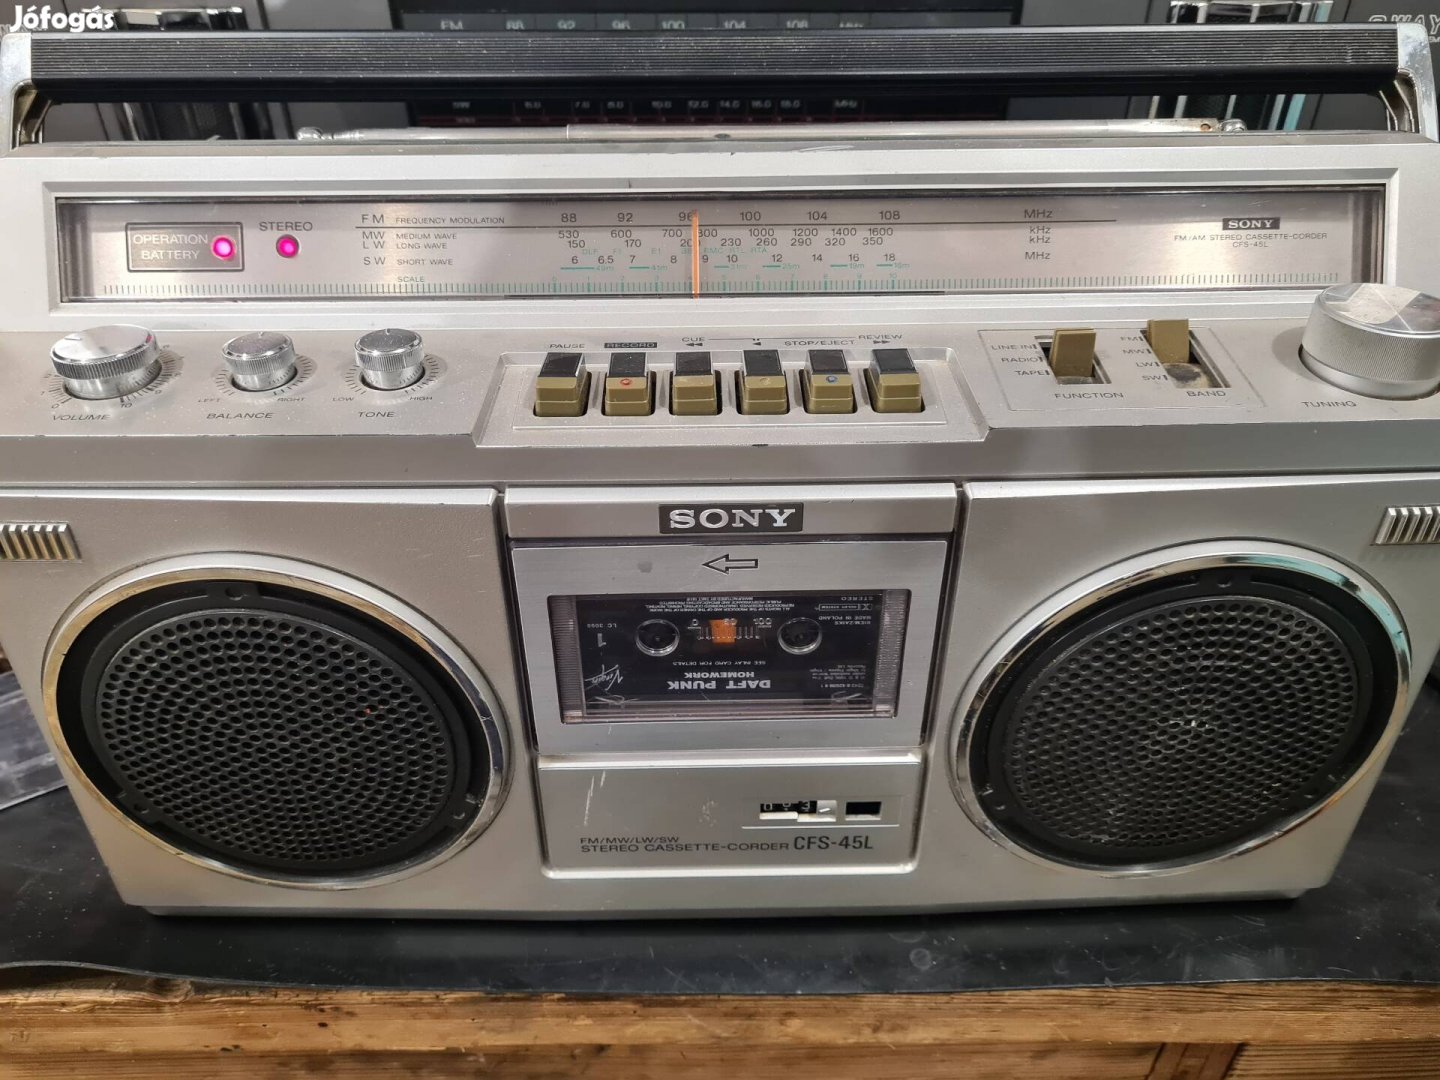 Sony CFS-45L boombox rádiós magnó